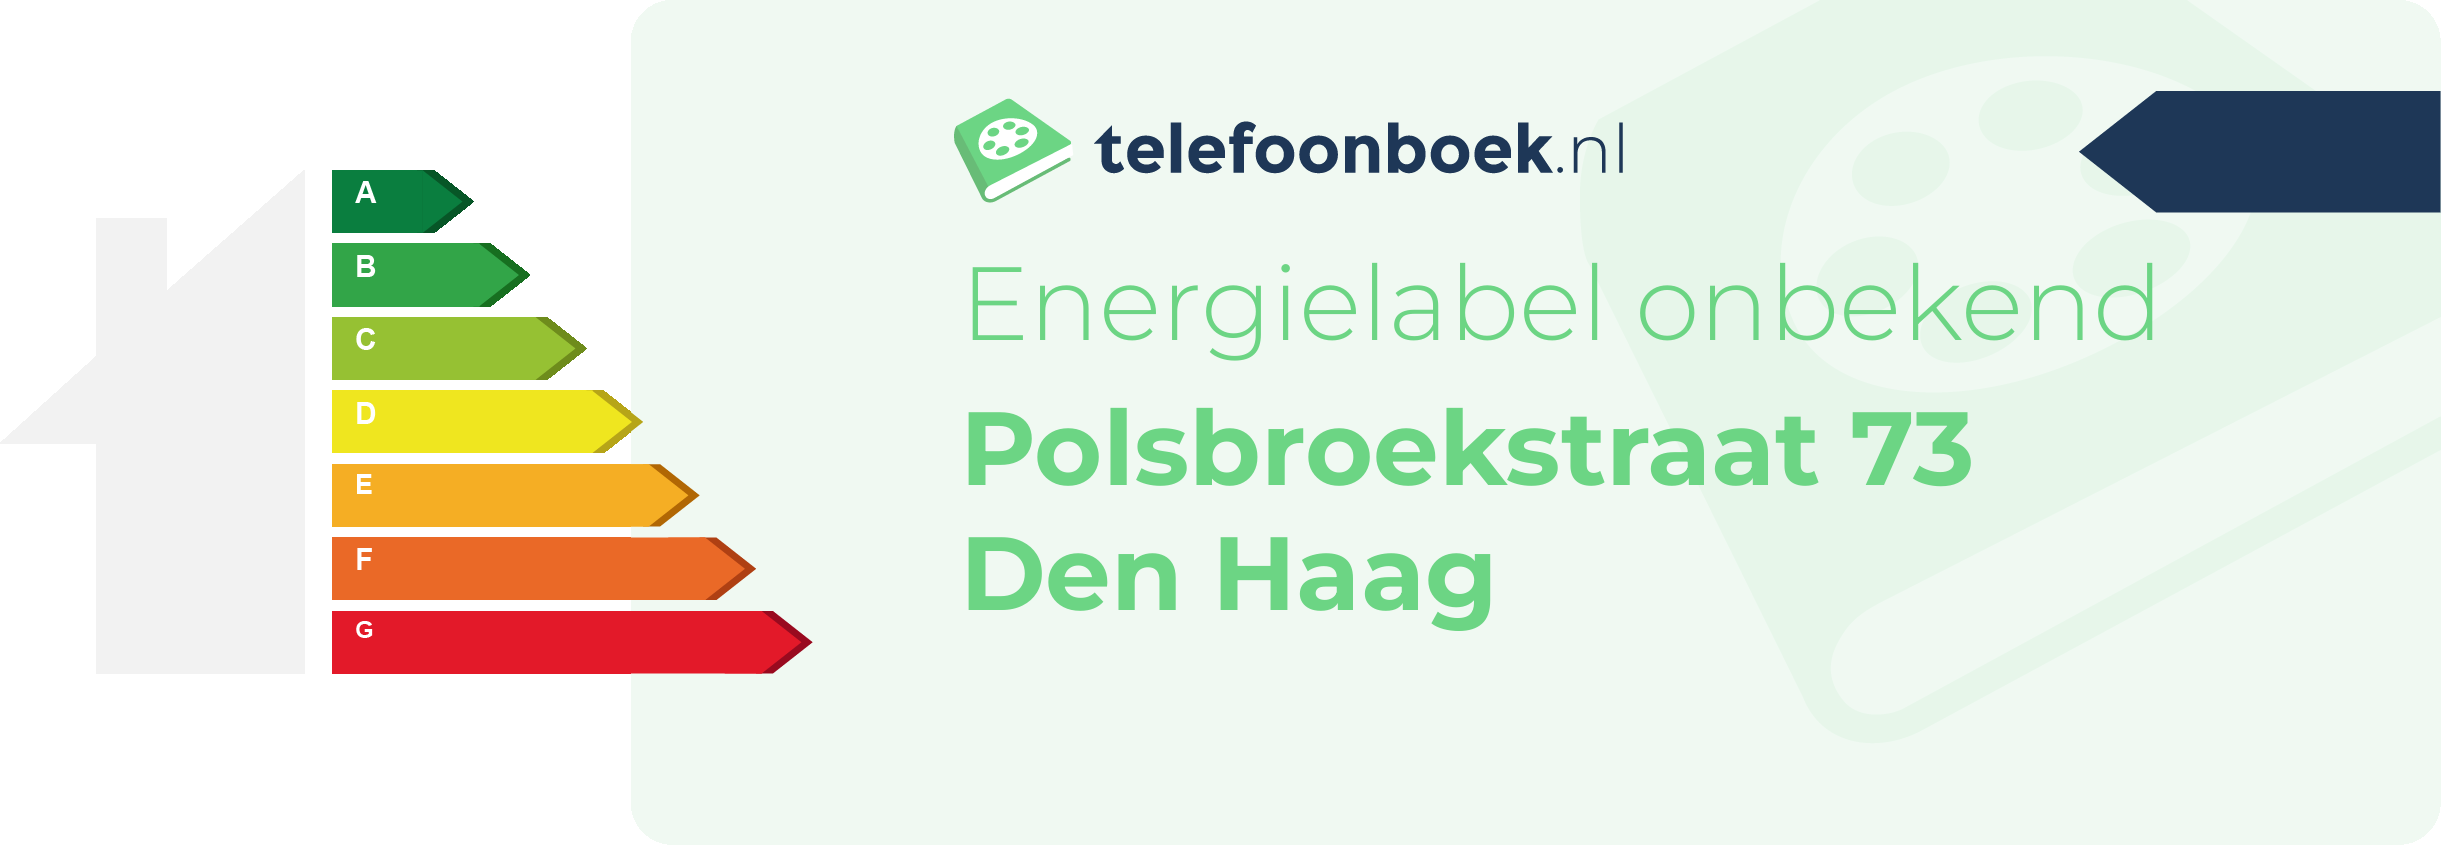 Energielabel Polsbroekstraat 73 Den Haag